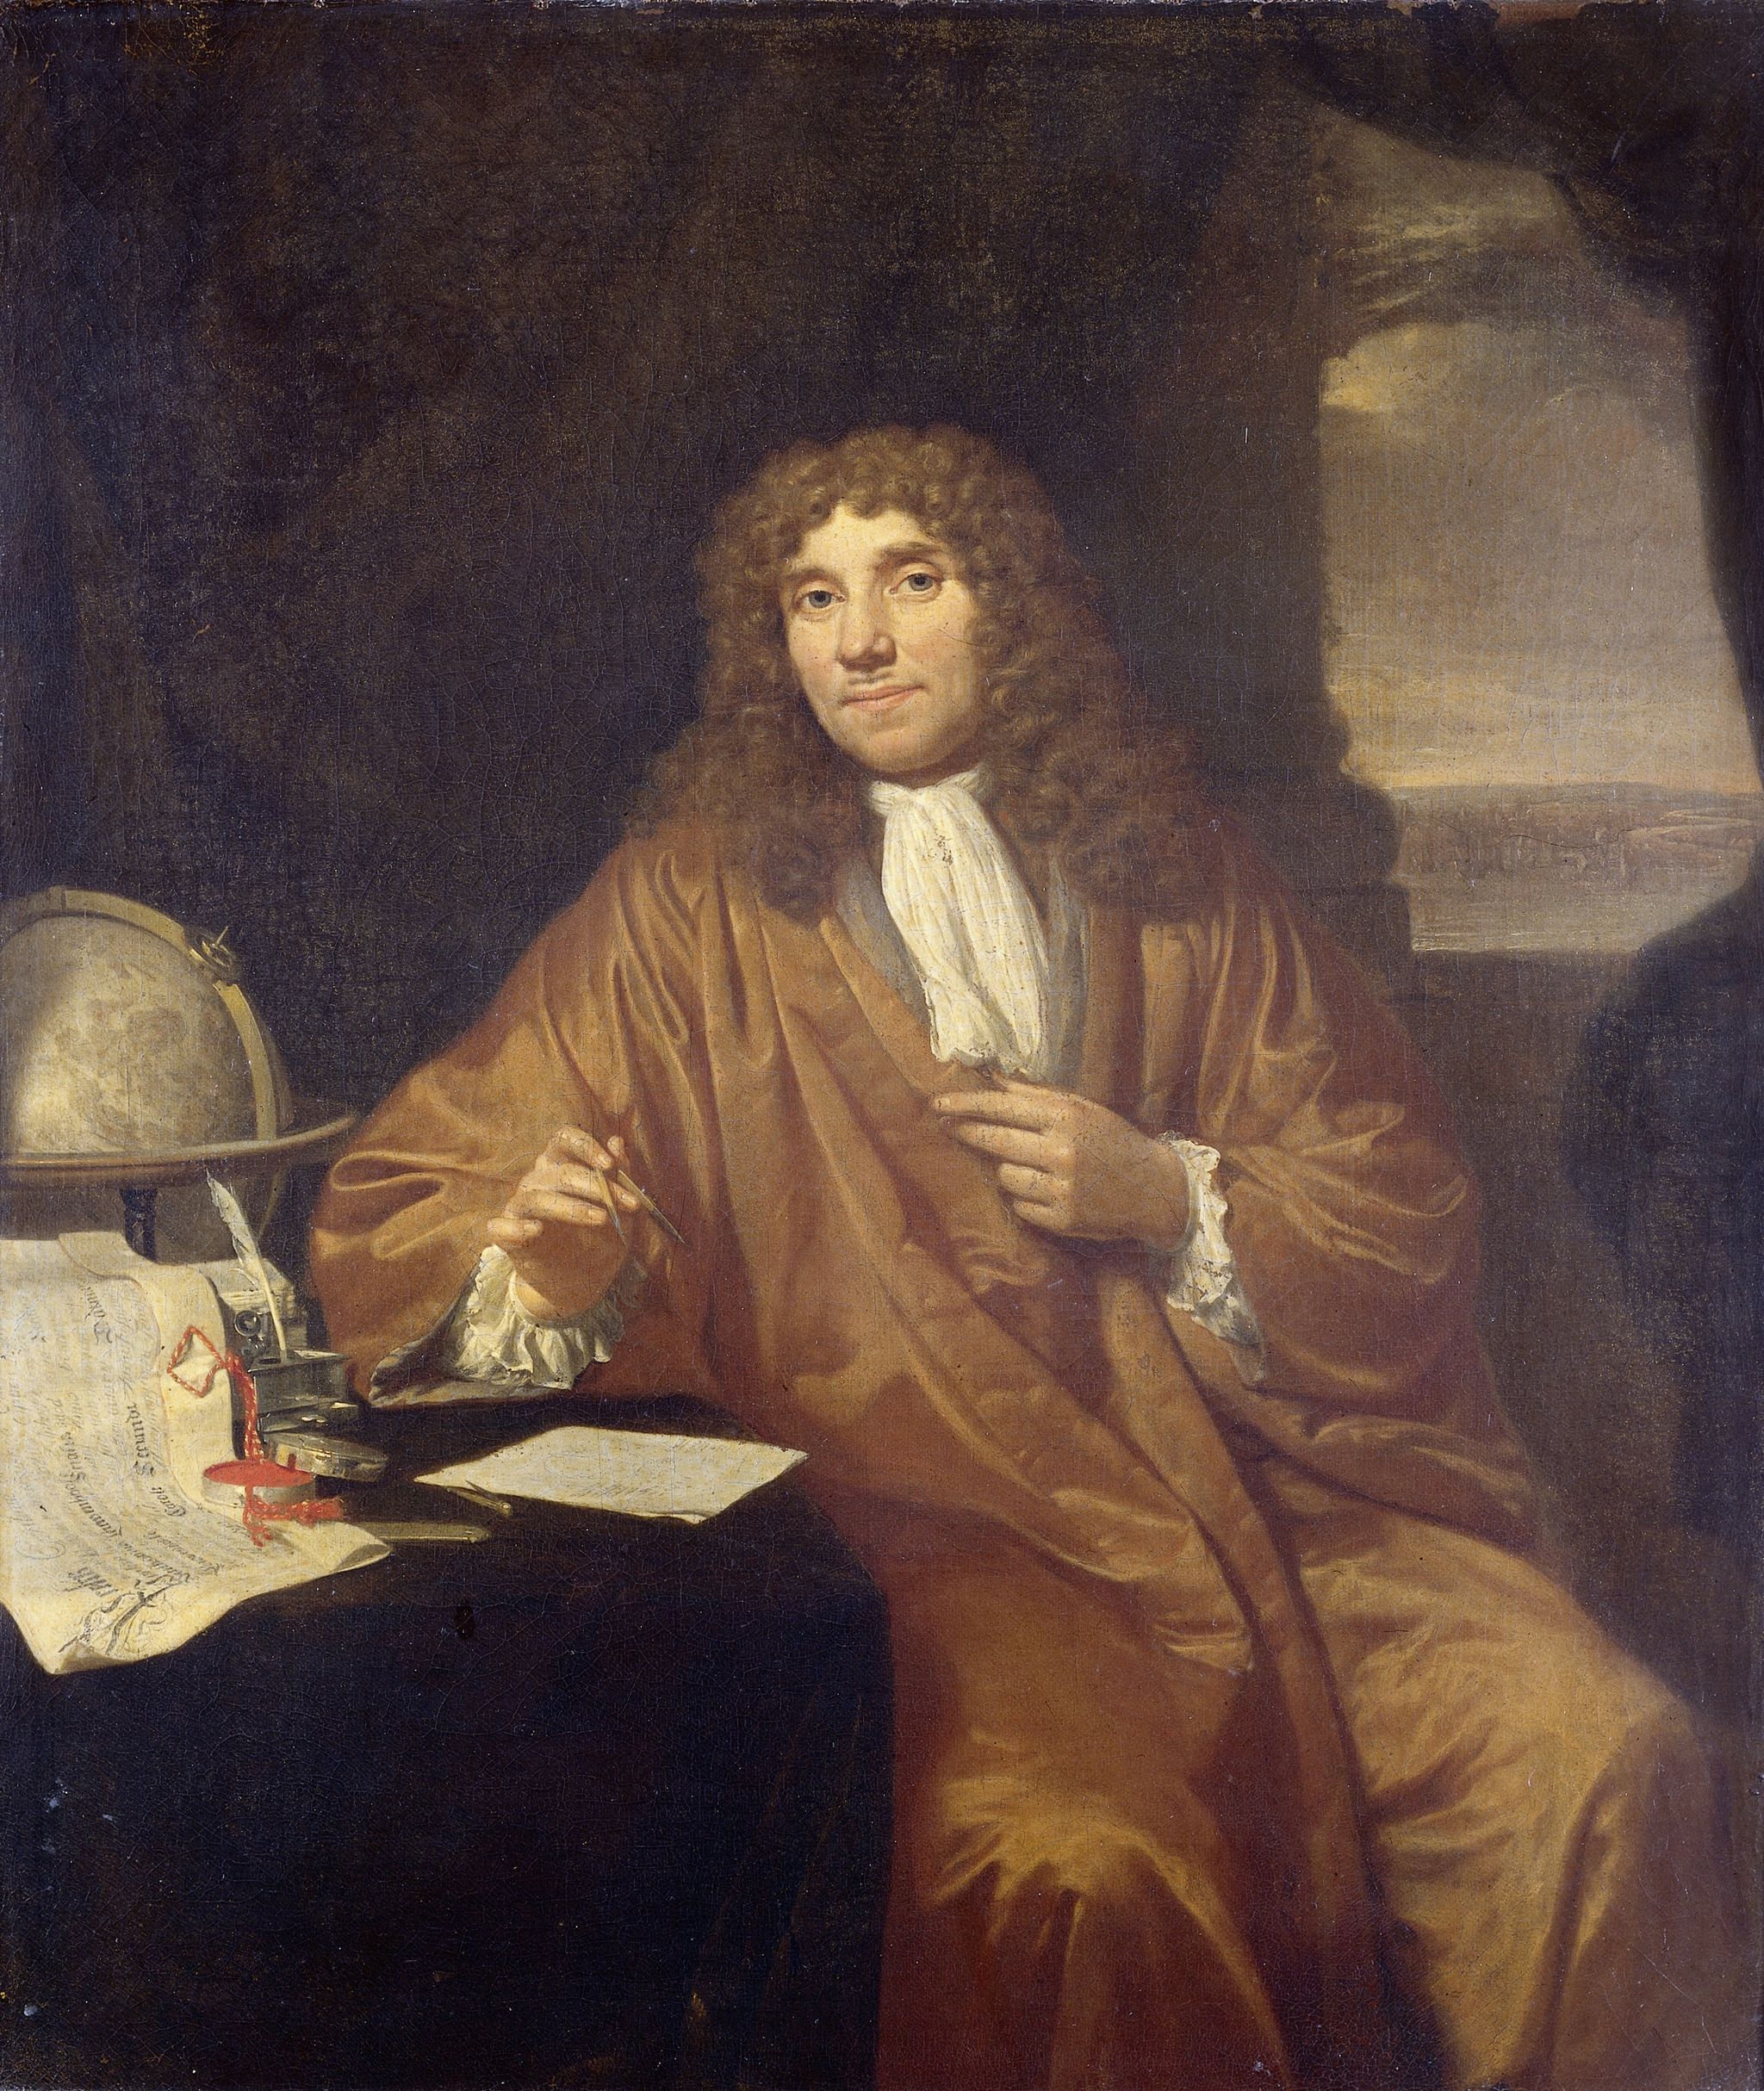 Anthonie van Leeuwenhoek (1632-1723), forefather of microbiology